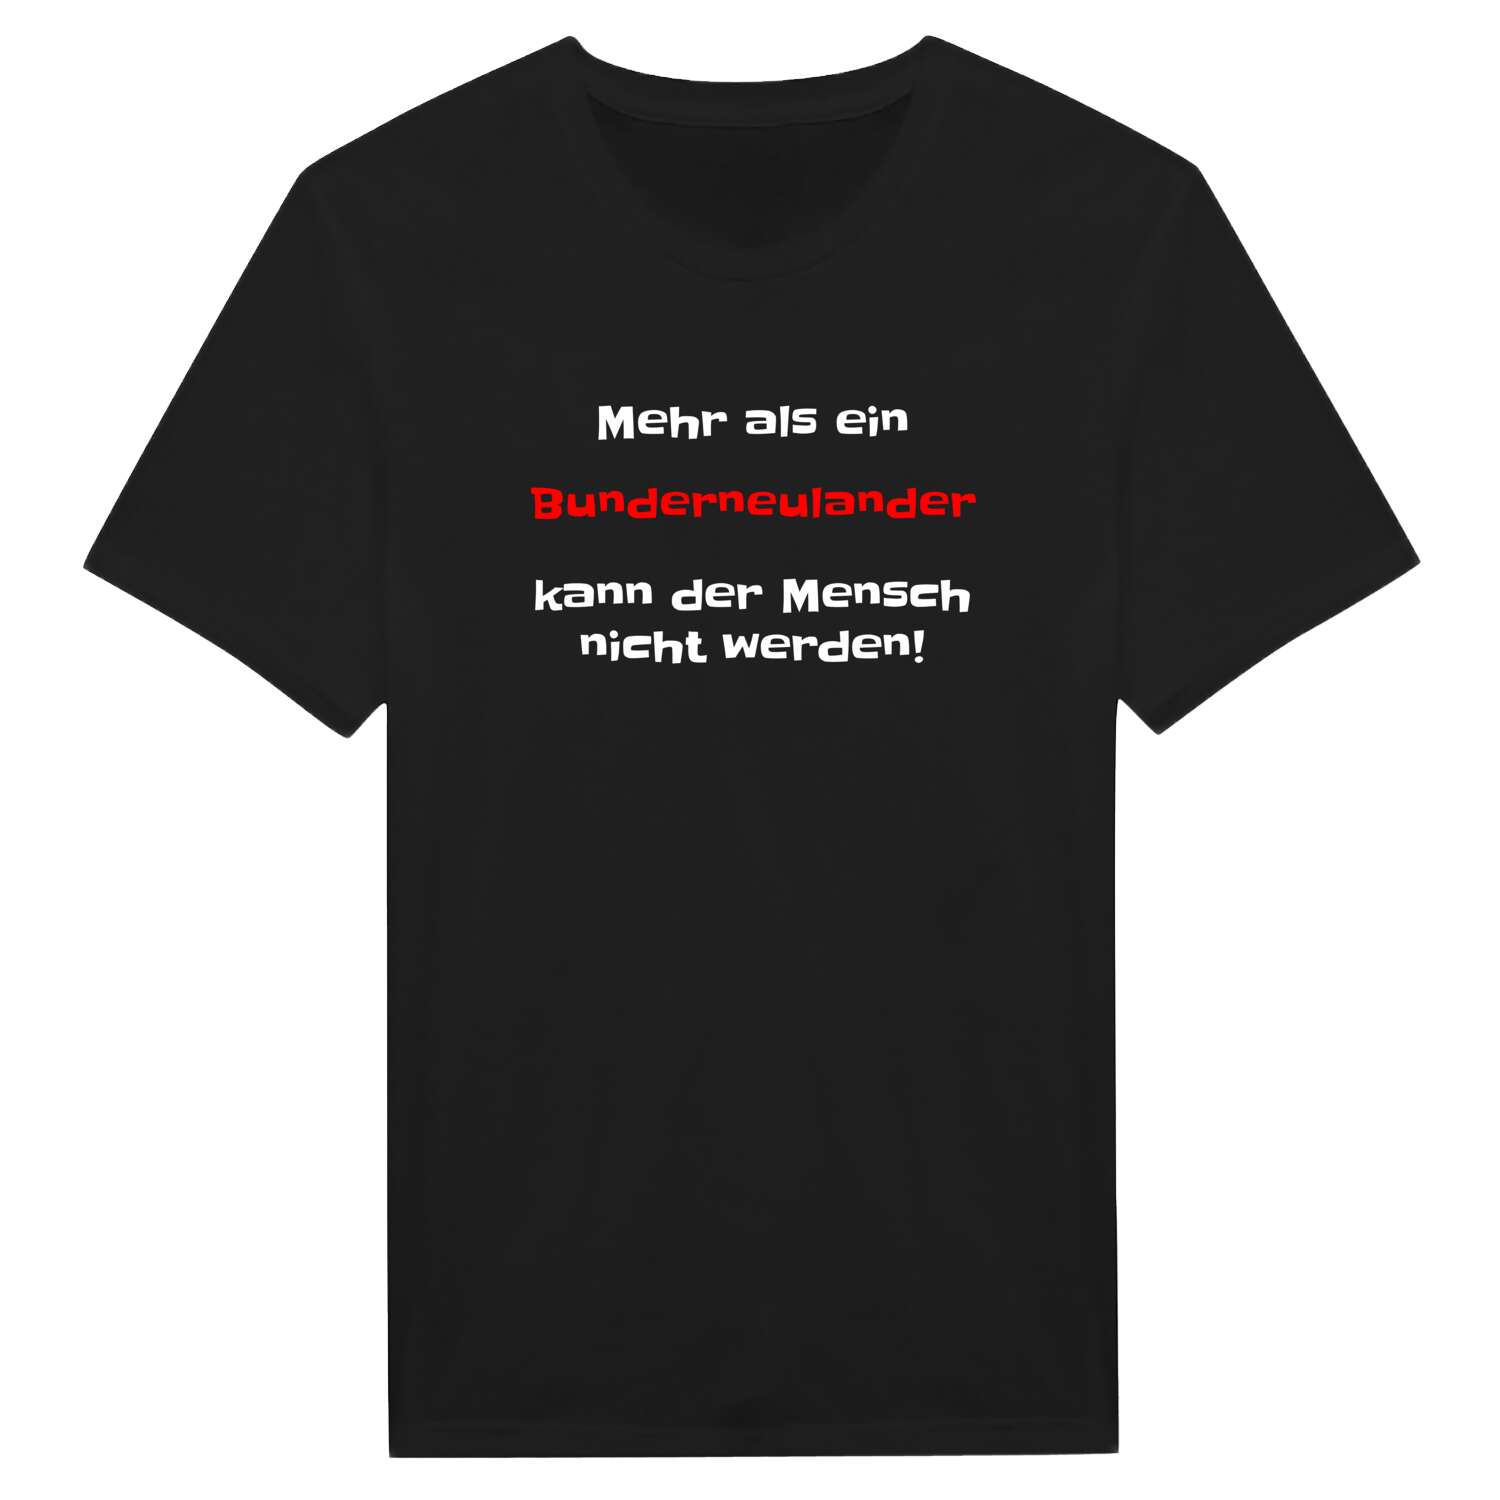 Bunderneuland T-Shirt »Mehr als ein«